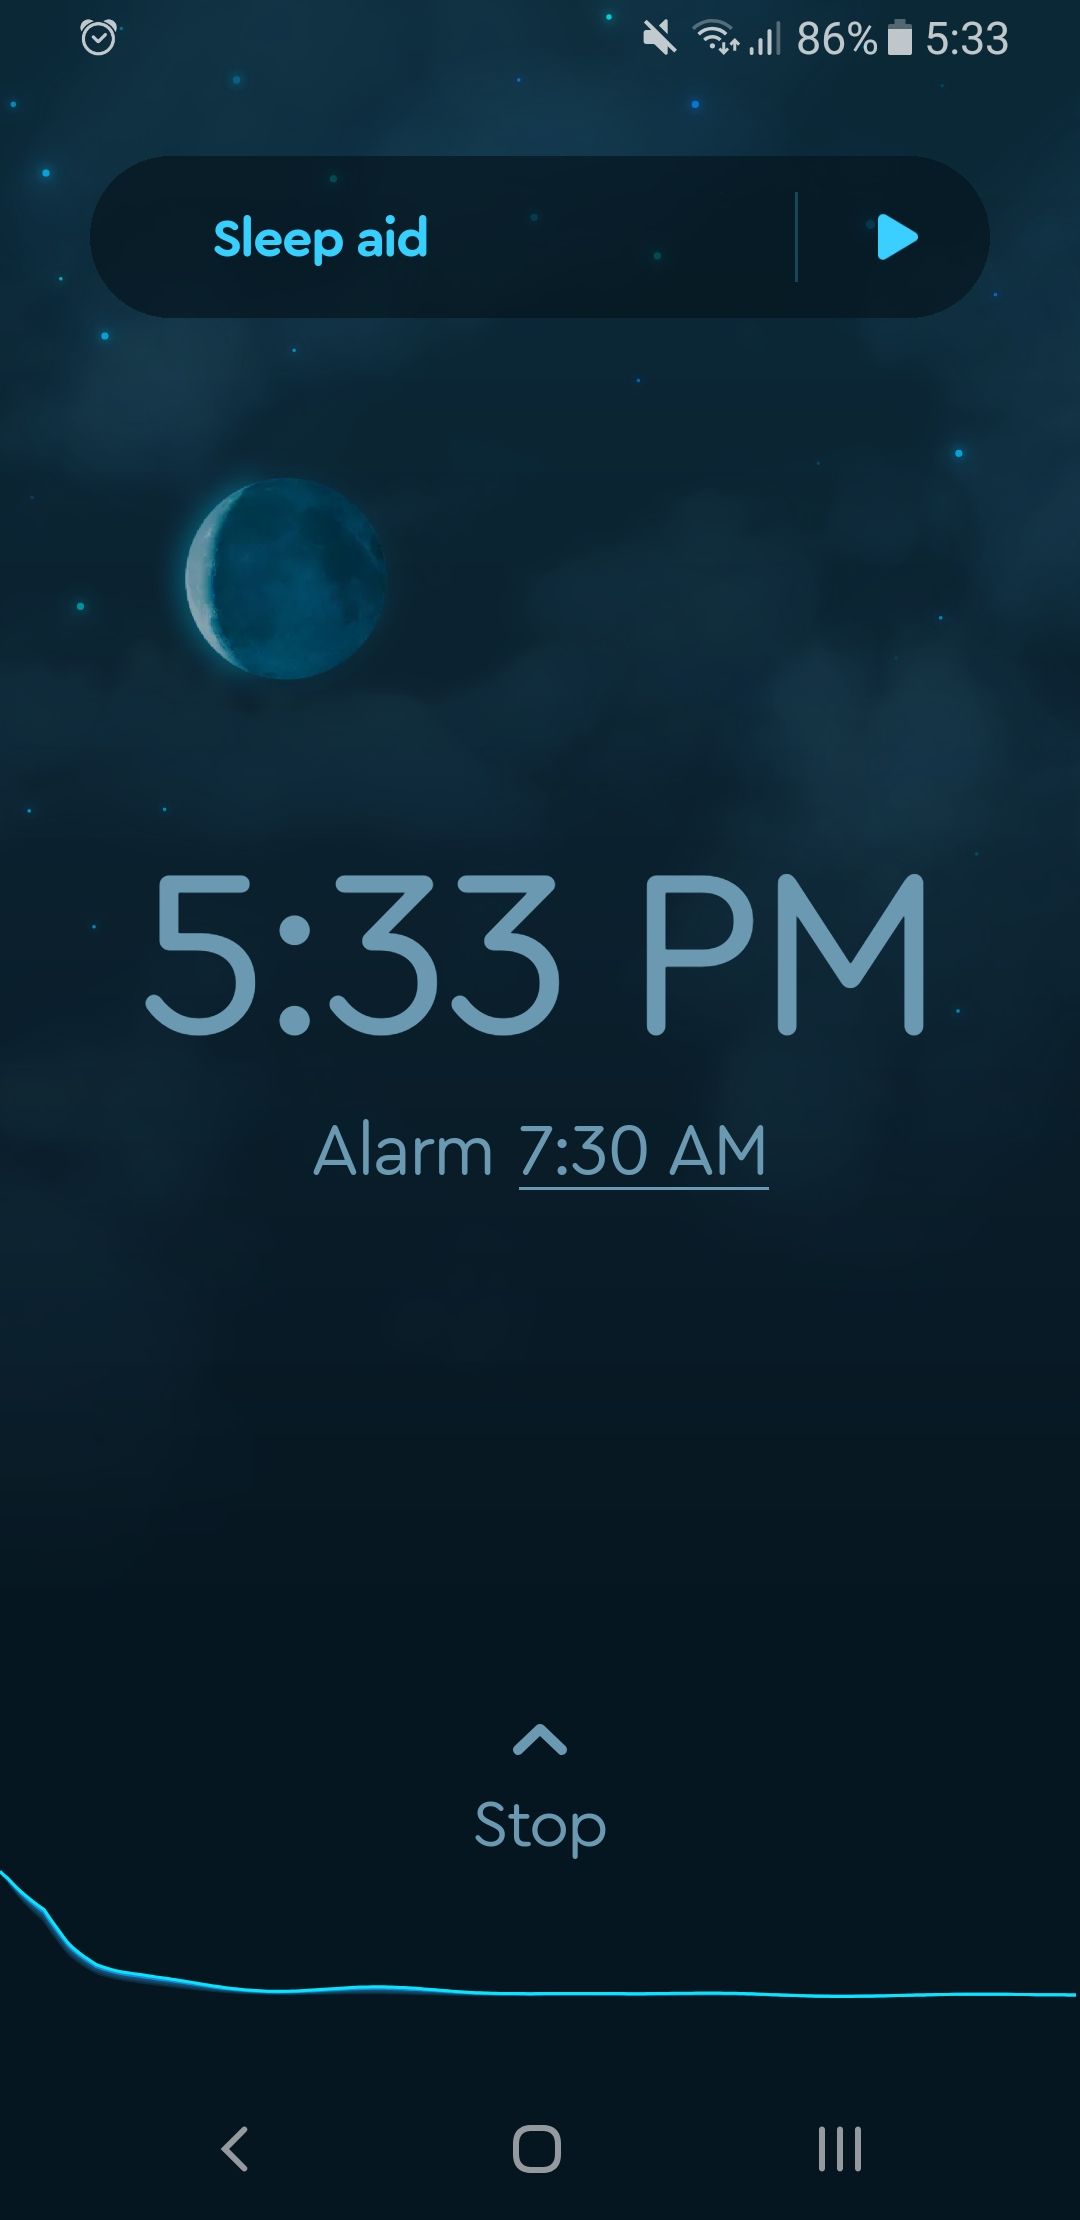 Sleep Cycle alarm in progress